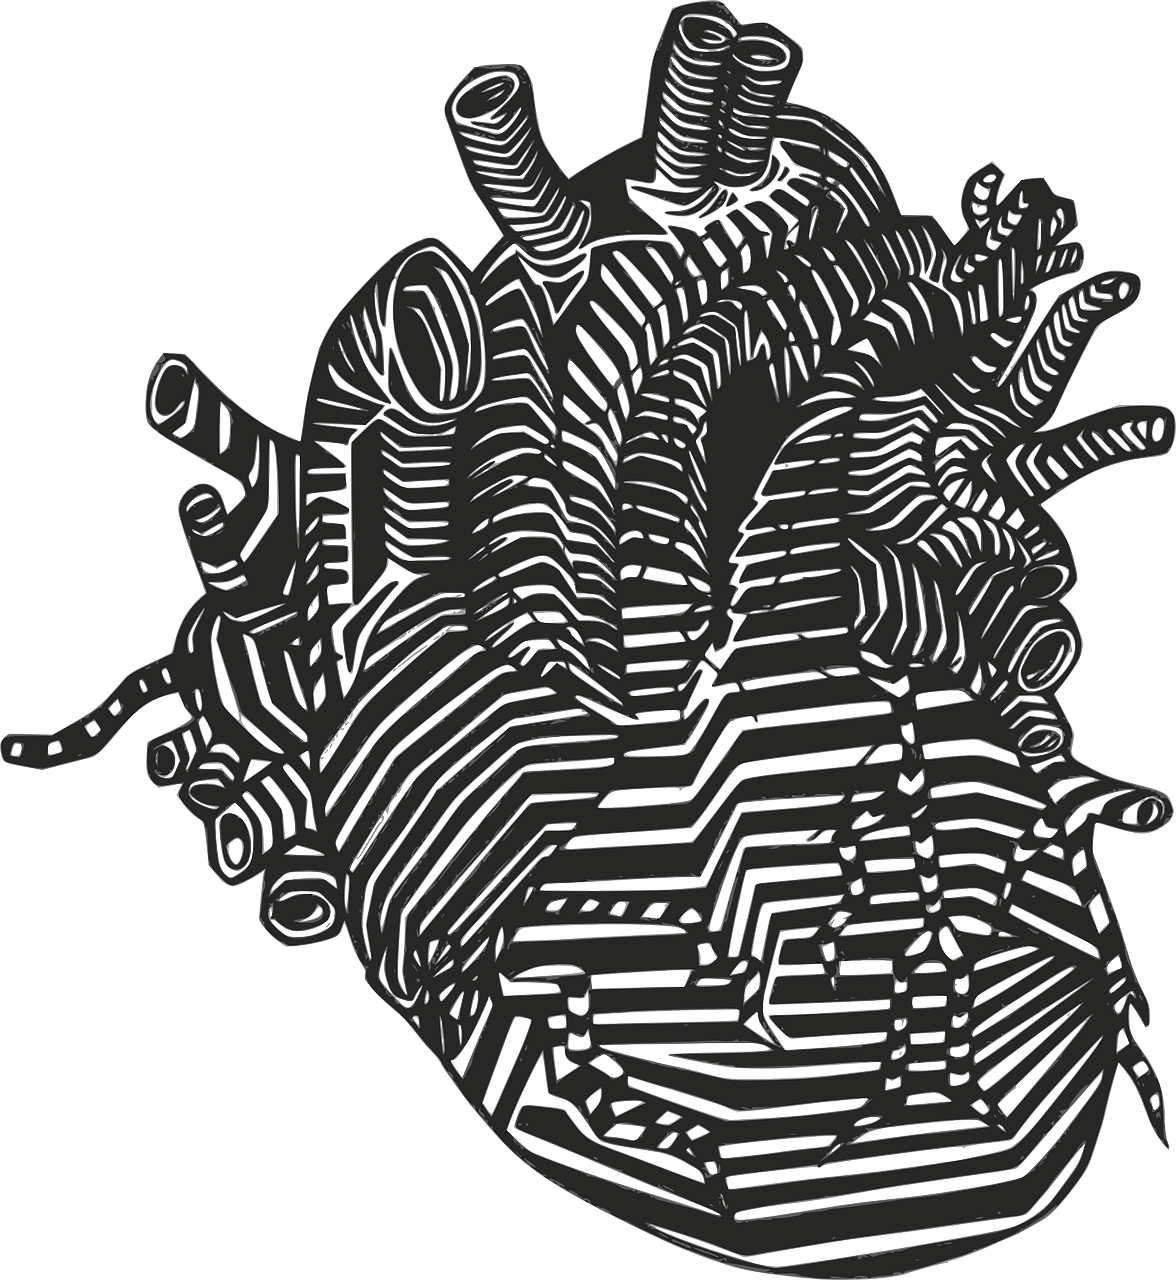 Širdis, Venos, Arterijos, Anatomija, Kraujotaka, Kraujo Cirkuliacija, Medicina, Skilvelis, Organas, Impulsas